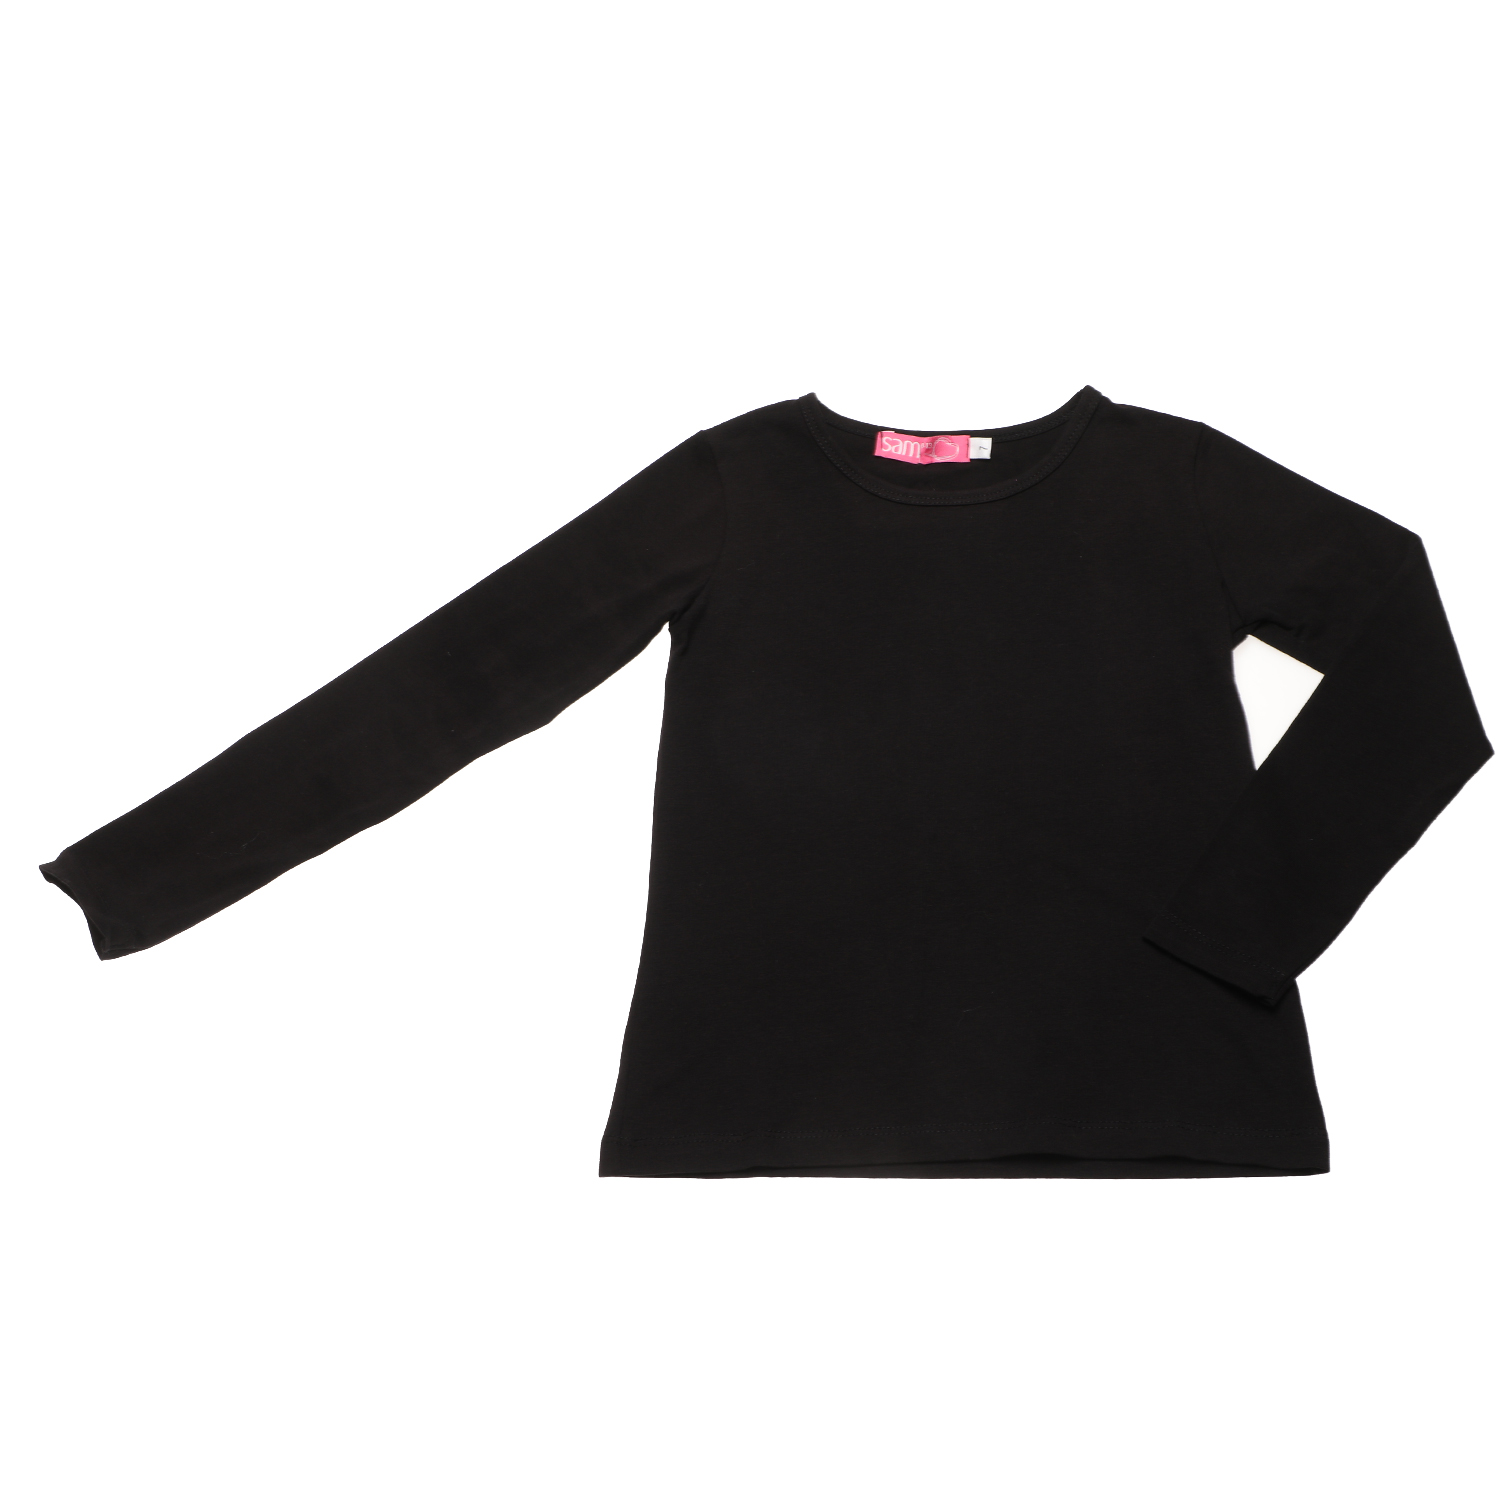 Παιδικά/Girls/Ρούχα/Μπλούζες Μακρυμάνικες SAM 0-13 - Παιδική μπλούζα SAM 0-13 μαύρη